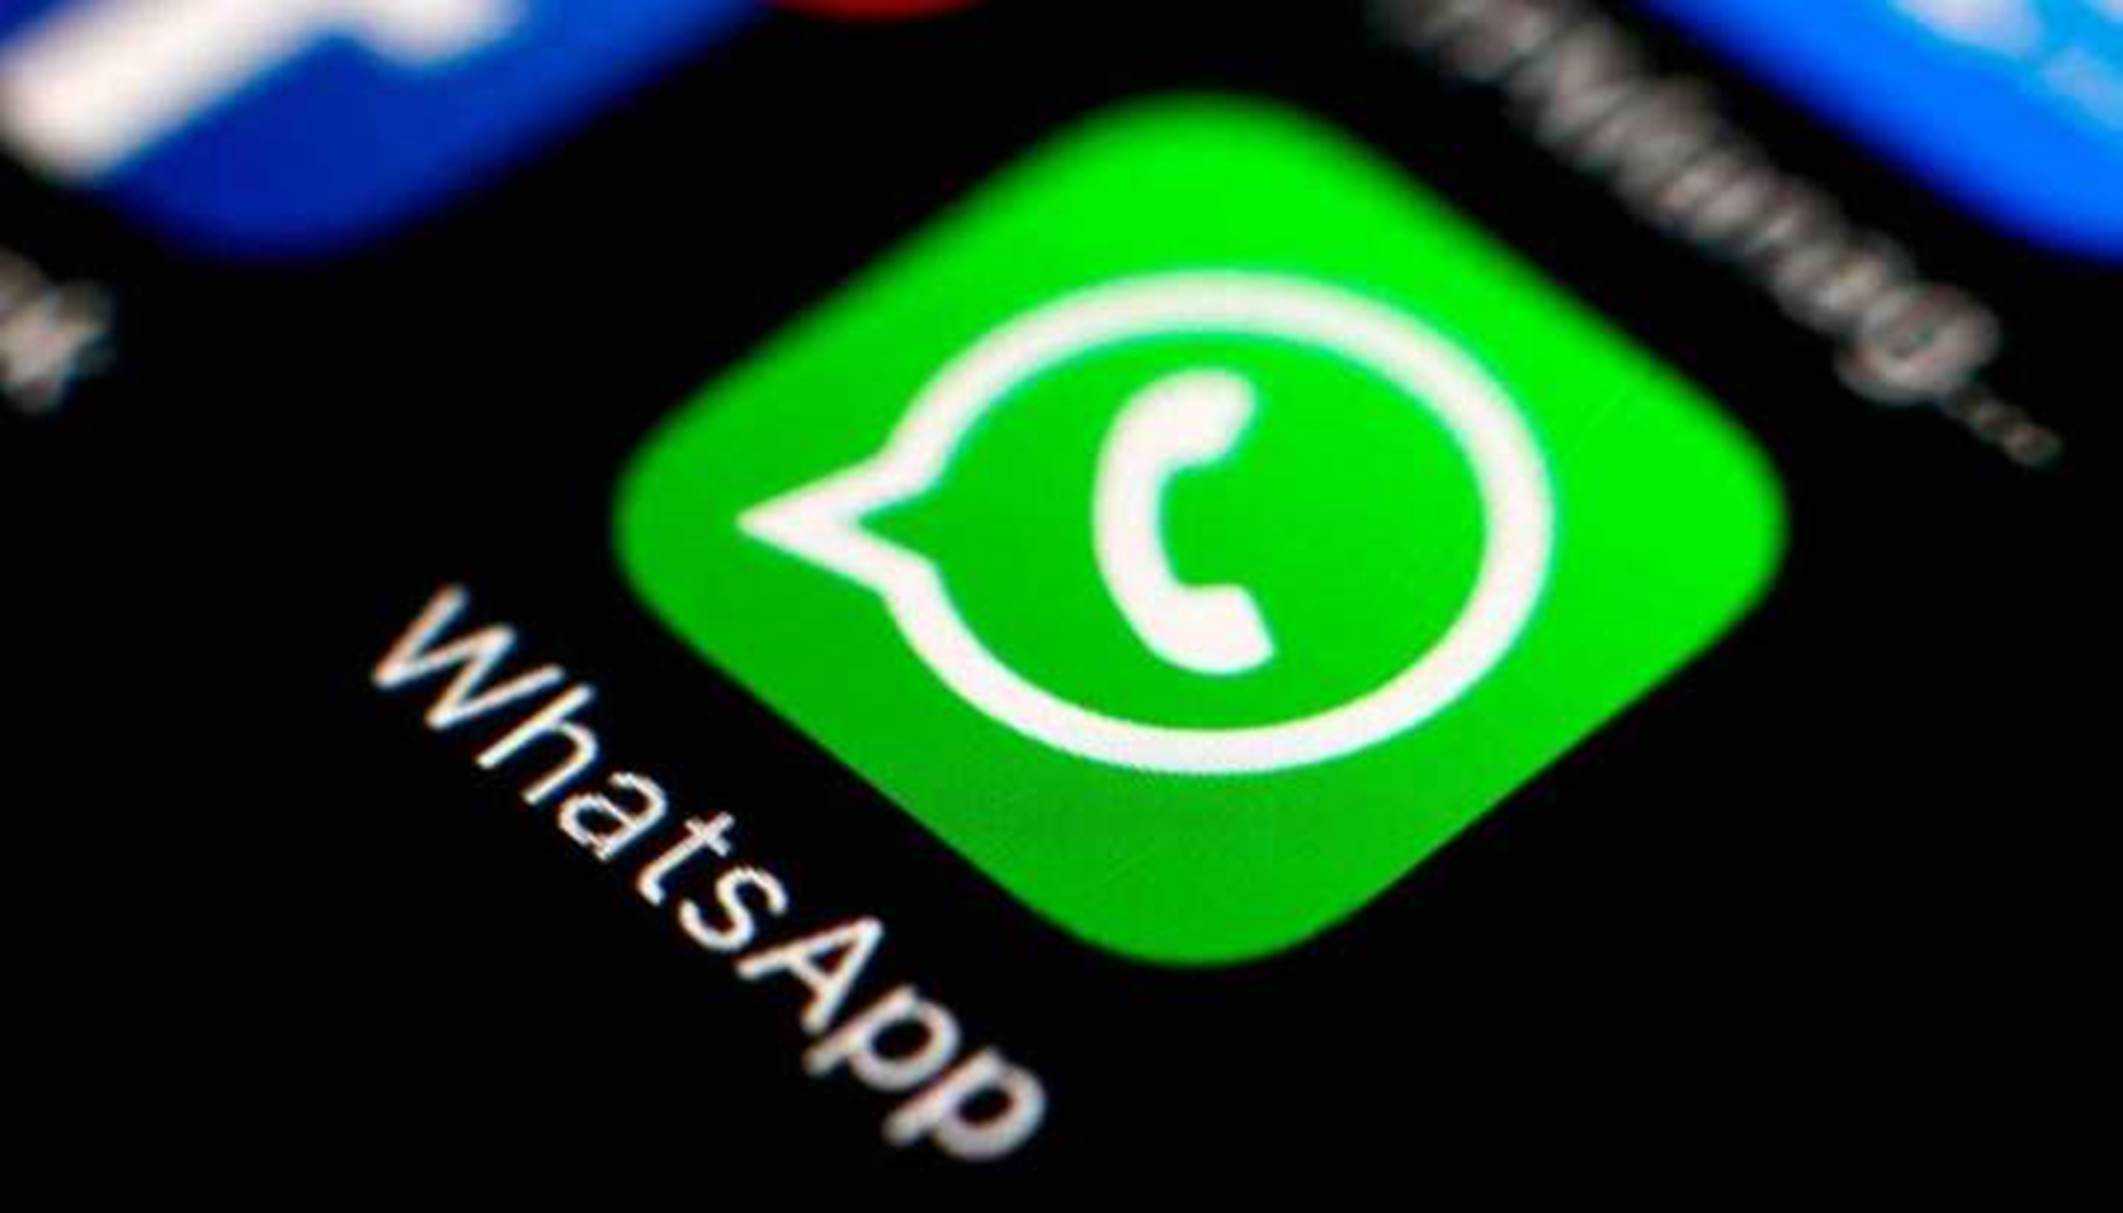 Novas funções que prometem chegar ao WhatsApp antes do final de 2020